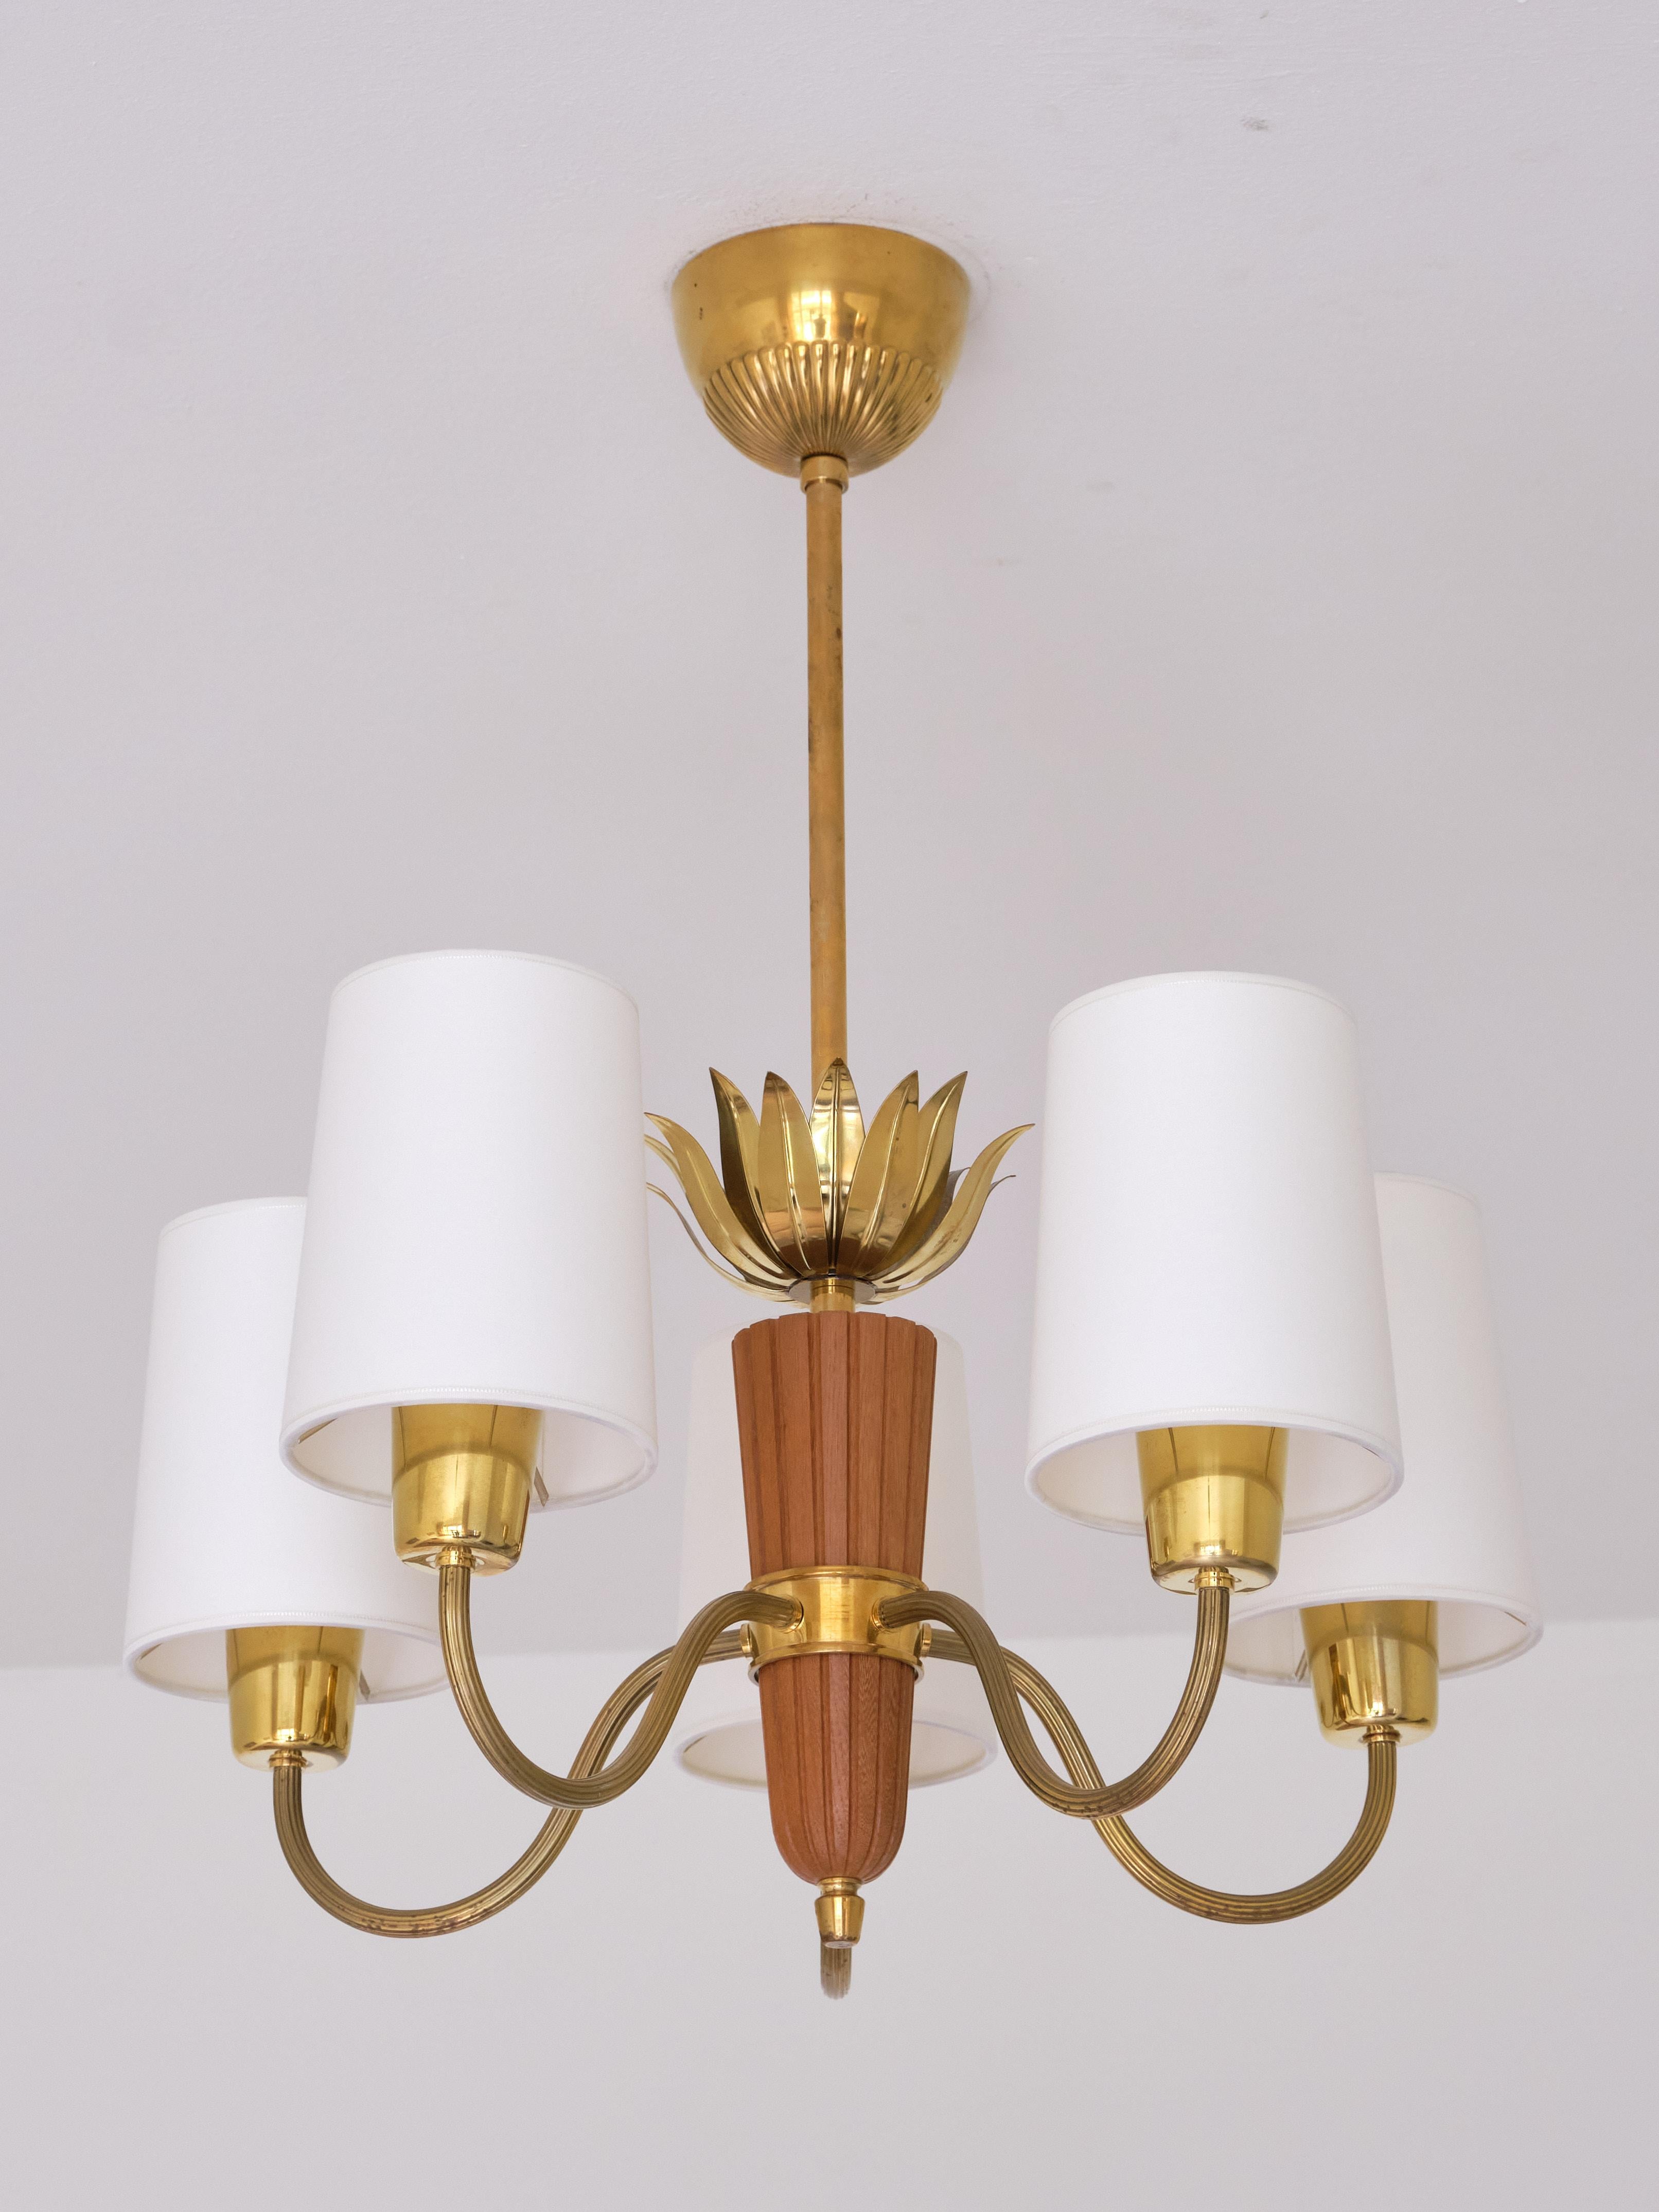 Cet élégant lustre à cinq bras a été produit par ASEA en Suède dans les années 1950. La lampe se compose d'une tige en laiton, d'une pièce centrale en chêne sculpté à laquelle sont attachés les cinq bras. Les feuilles décoratives en laiton attachées